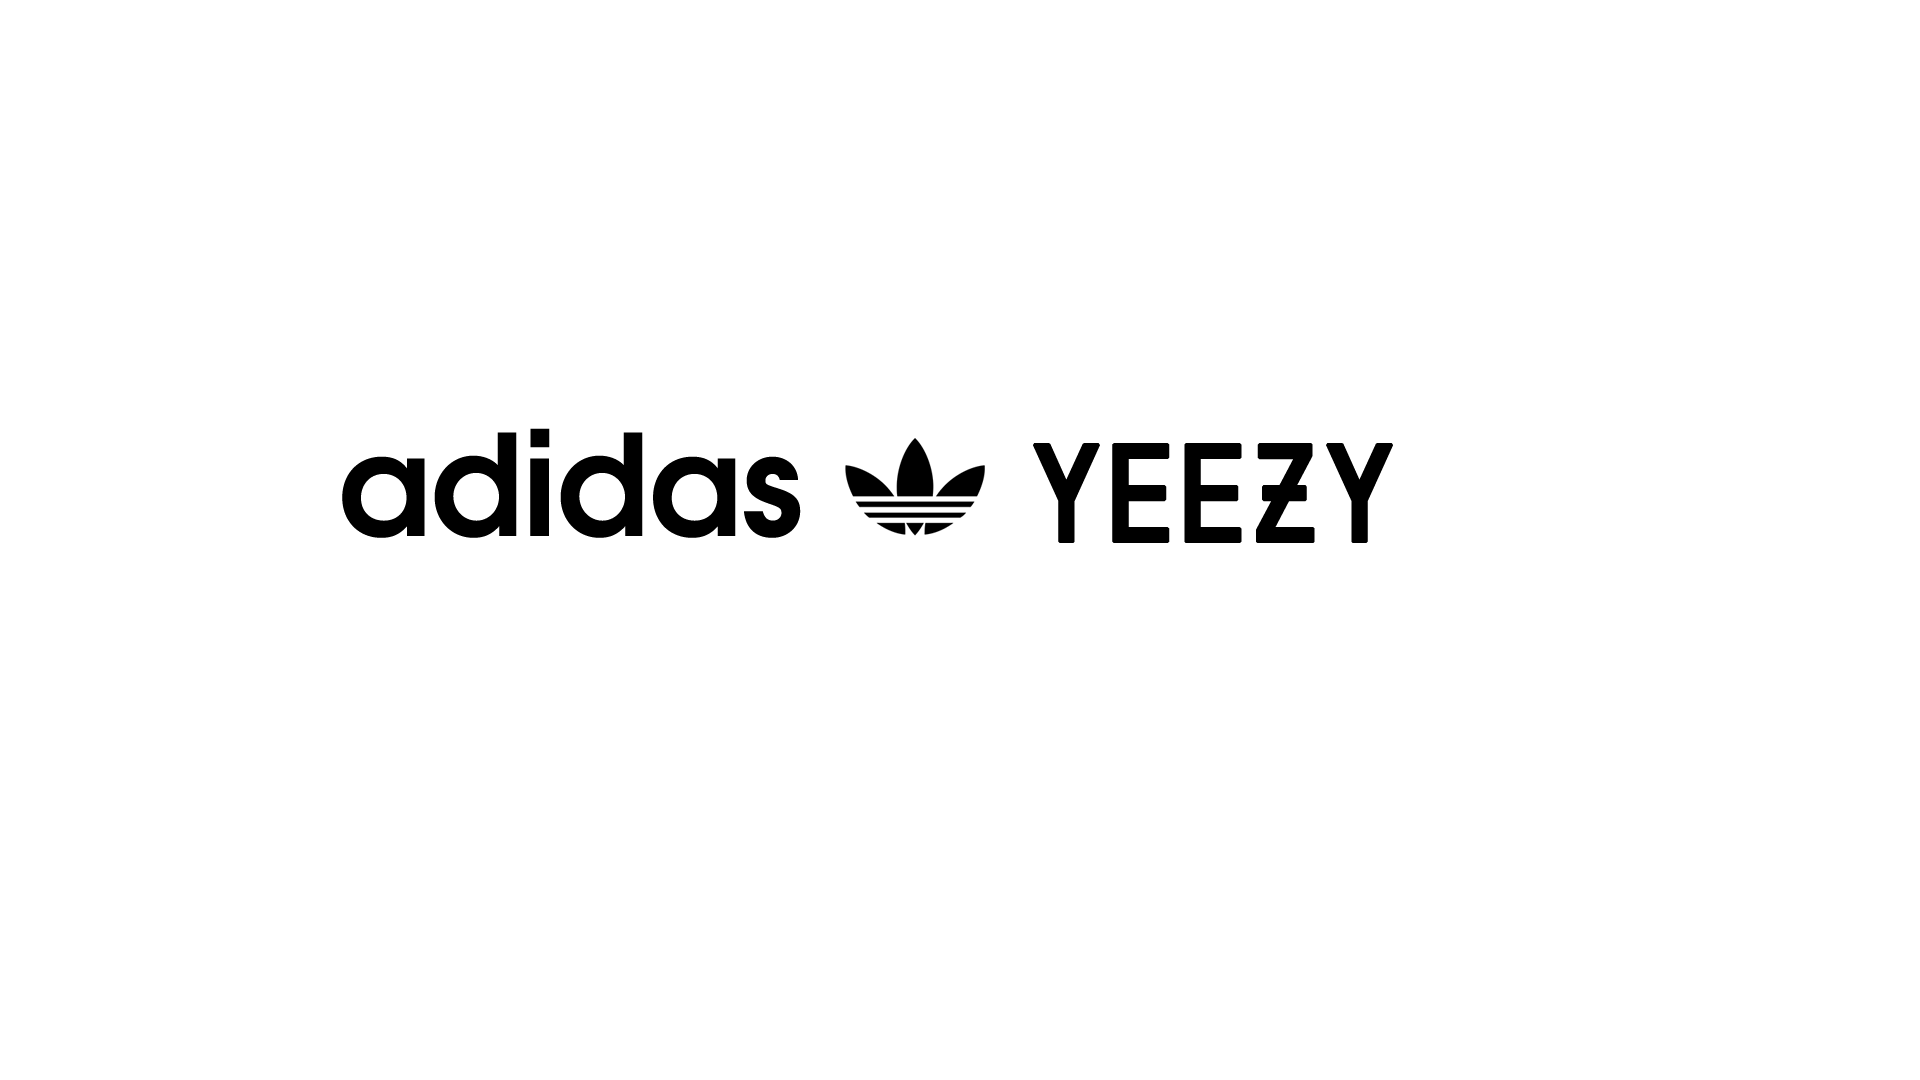 Yeezy Adidas Wallpapers